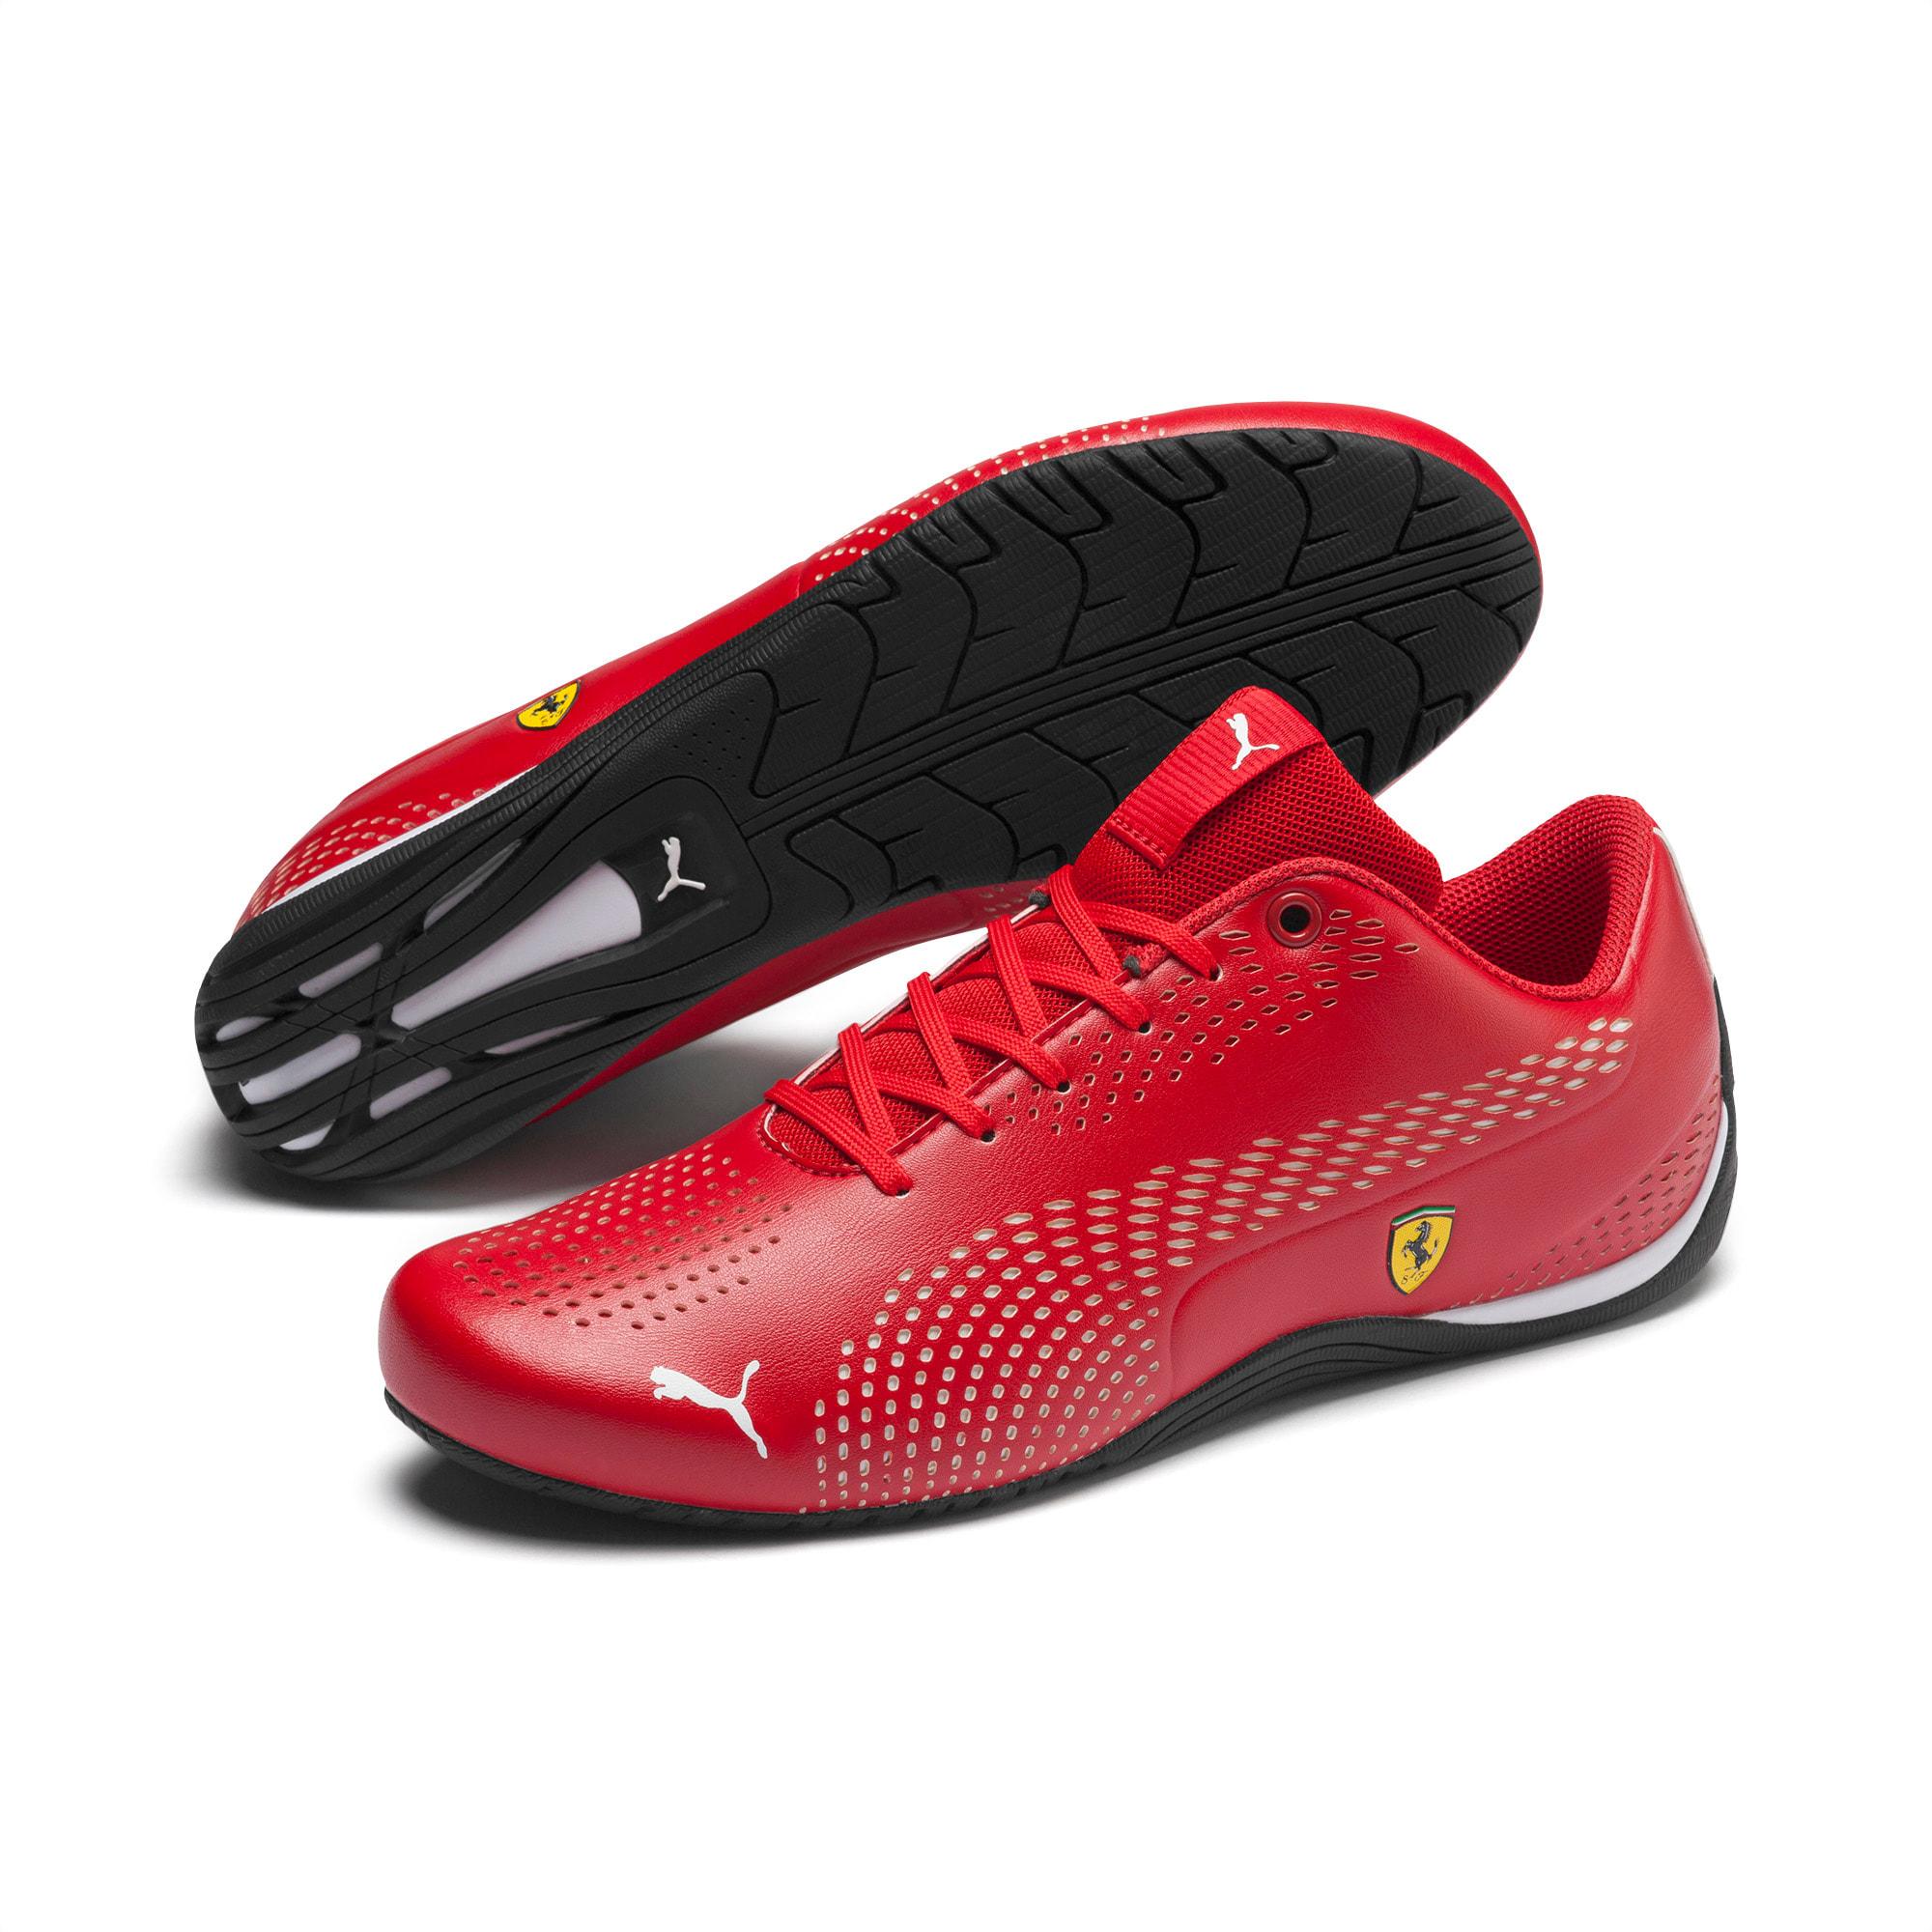 PUMA Synthetic Scuderia Ferrari Drift Cat 5 Ultra Ii Men's Shoes in Red |  Lyst